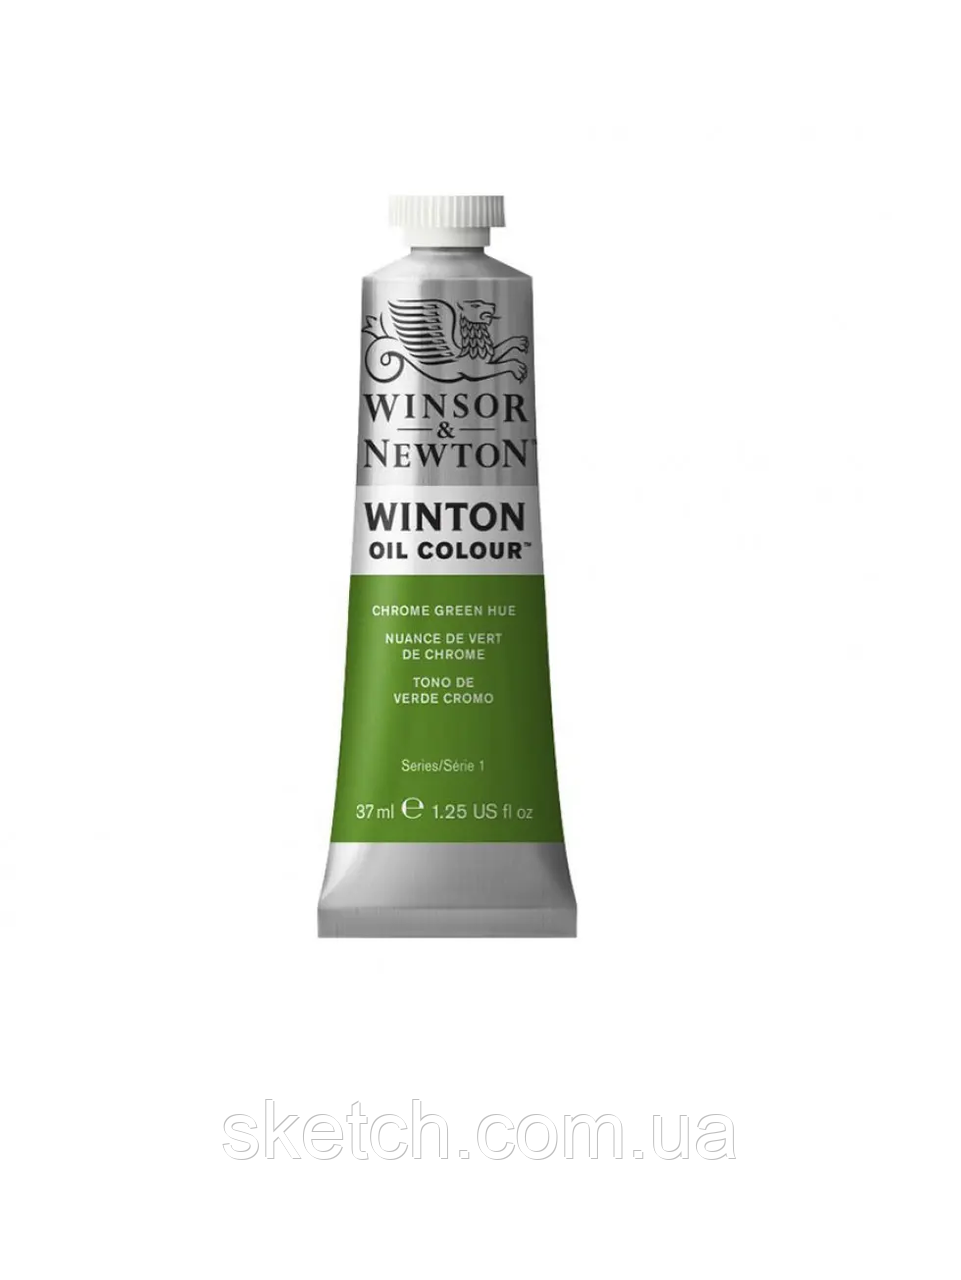 Олійна фарба WINSOR & NEWTON Winton Oil Colour, №145 Хром зелений, 37мл